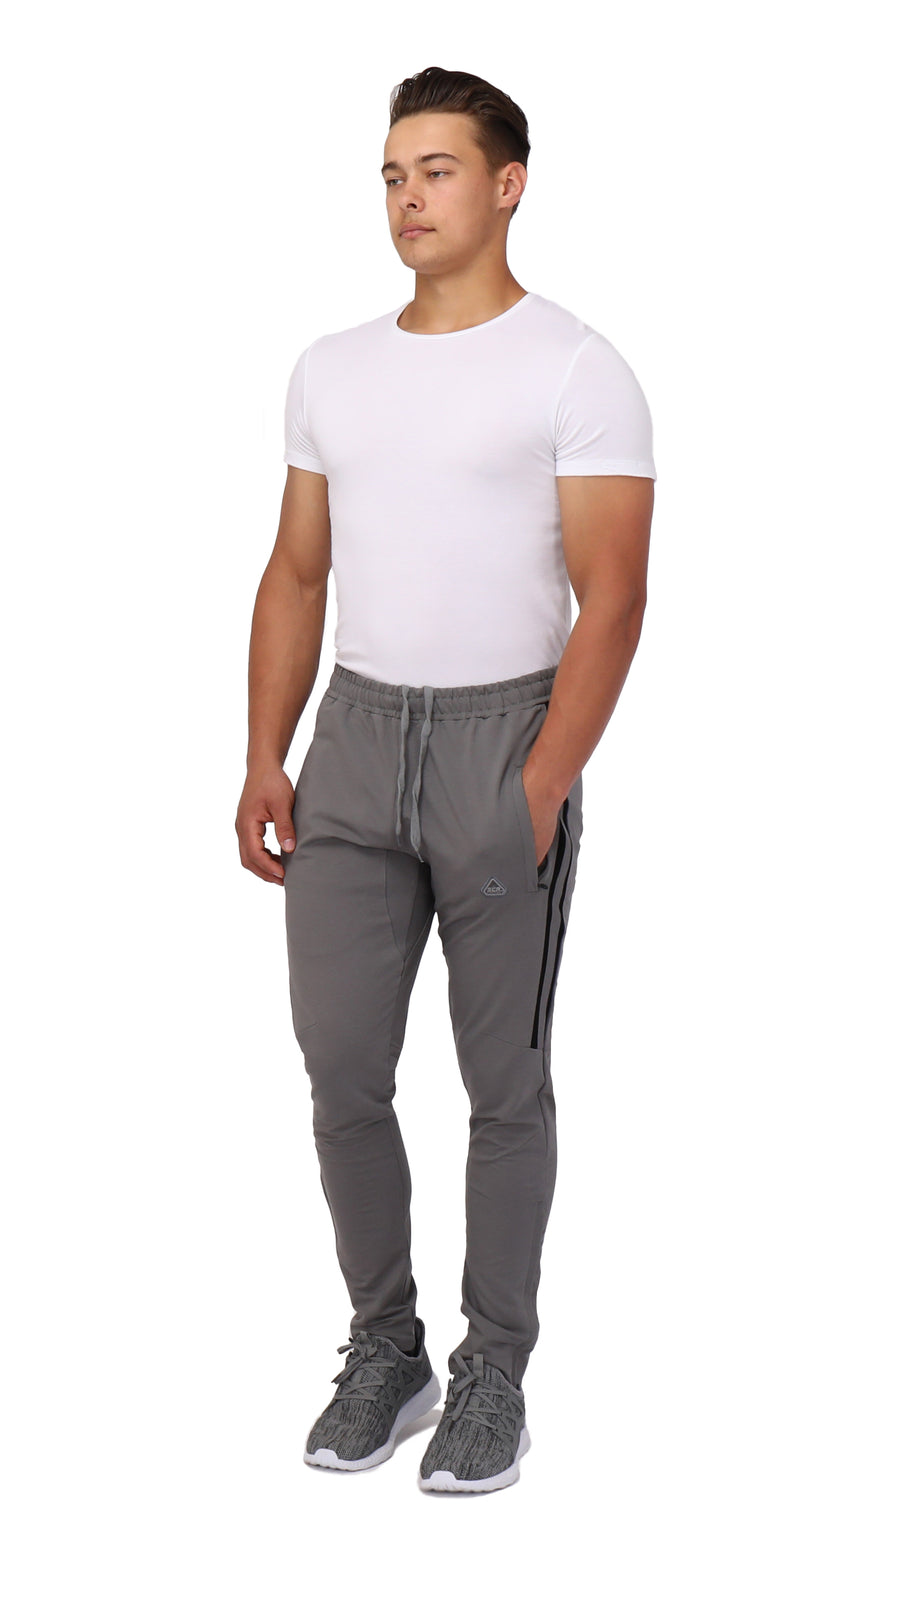 [SCR Sportswear] | Men's Sportswear and Athletic Wear